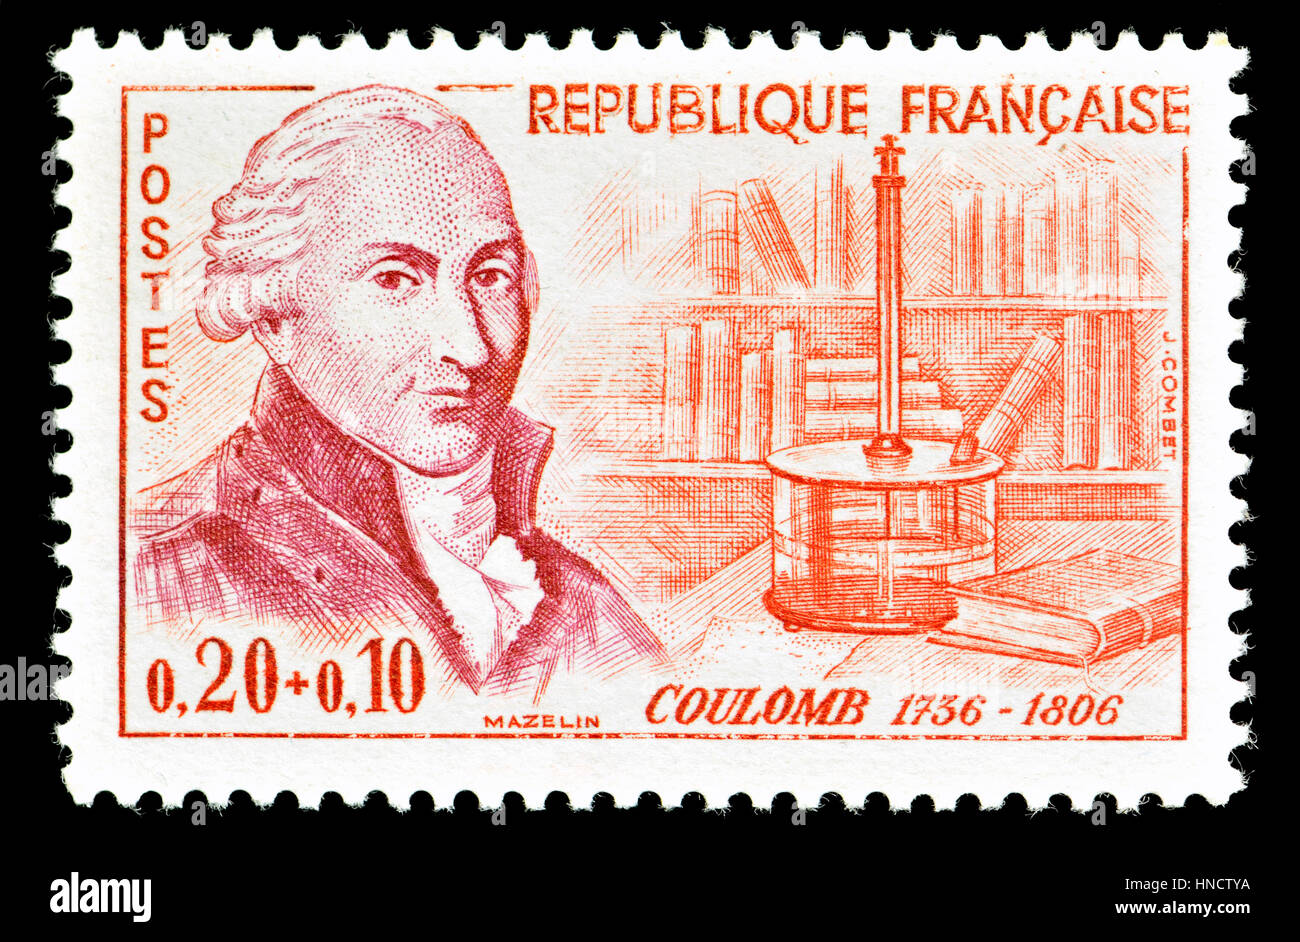 Timbre-poste français (1961) : Charles-Augustin de Coulomb (1736 - 1806), physicien français. Mieux connu pour l'élaboration de la loi de Coulomb, la définition de l'e Banque D'Images